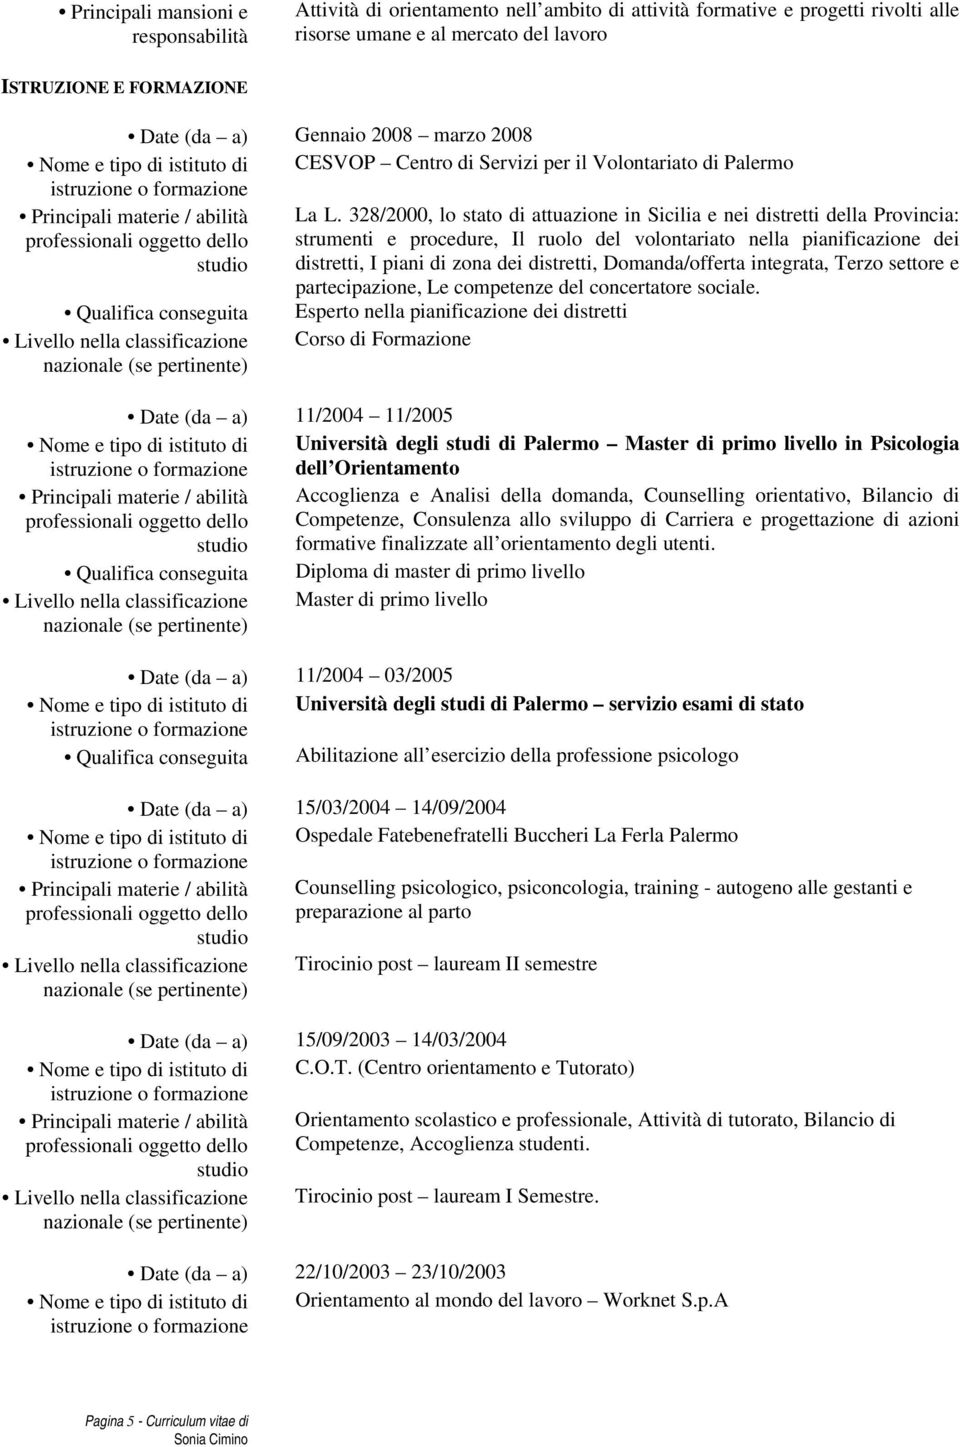 328/2000, lo stato di attuazione in Sicilia e nei distretti della Provincia: strumenti e procedure, Il ruolo del volontariato nella pianificazione dei distretti, I piani di zona dei distretti,